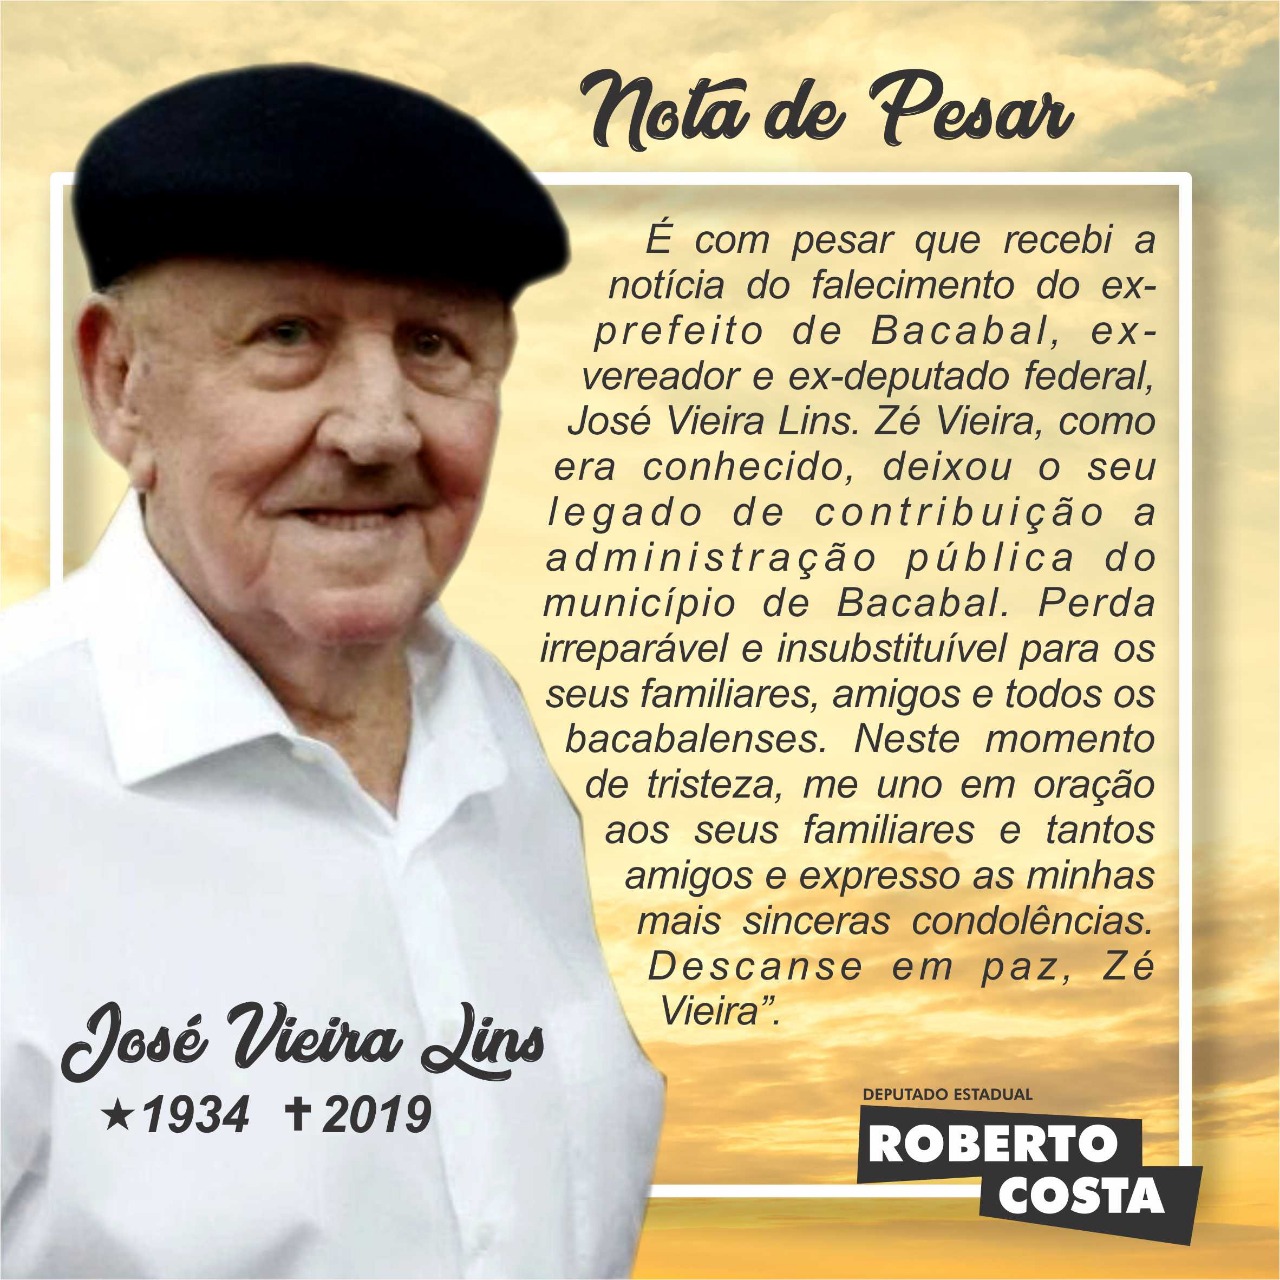 Roberto Costa emite nota de pesar pelo falecimento de Zé Vieira, ex-prefeito de Bacabal